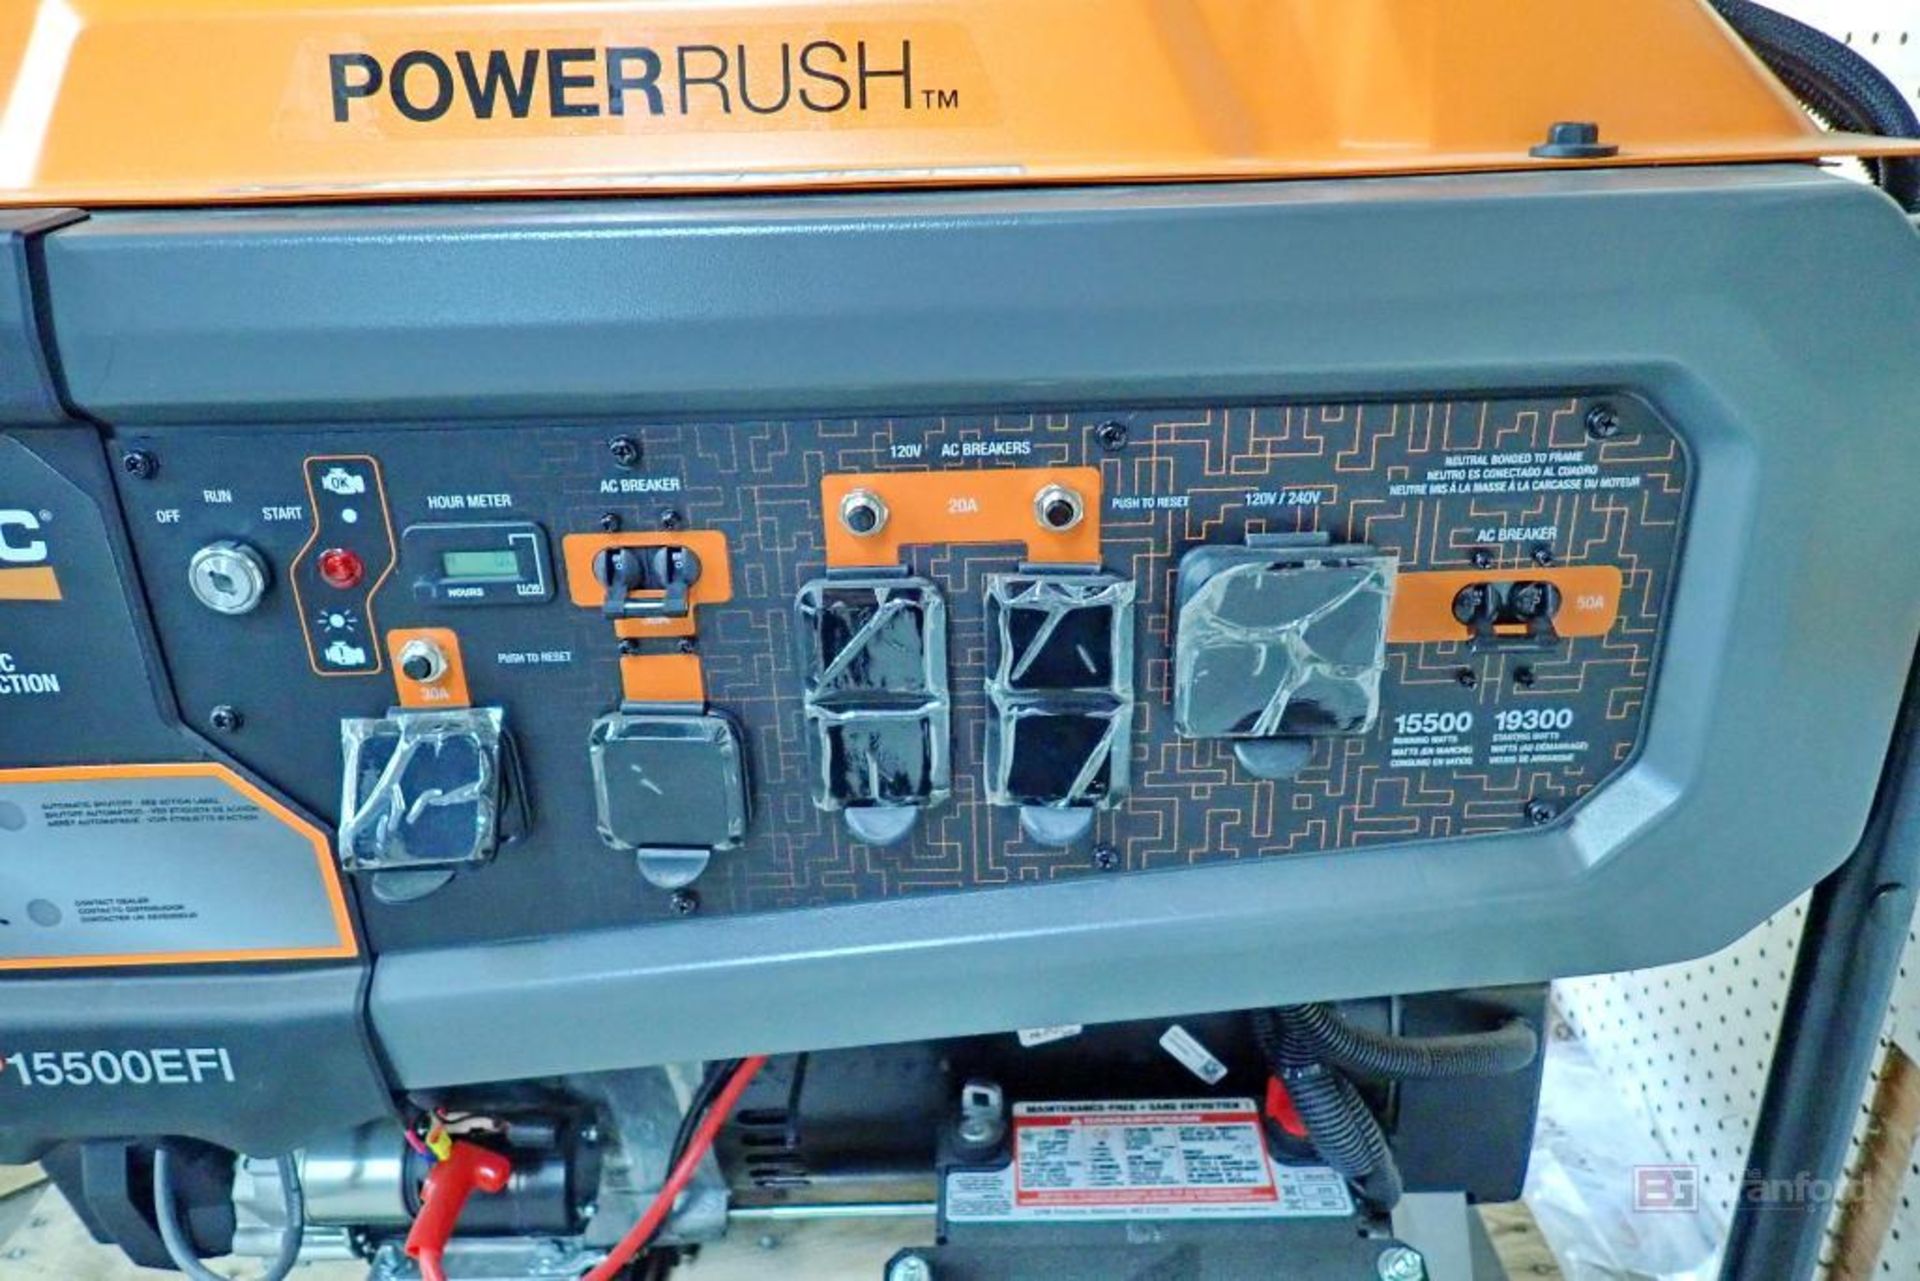 GENERAC Power Rush GP15500EFI Gas Powered Generator - Bild 9 aus 11